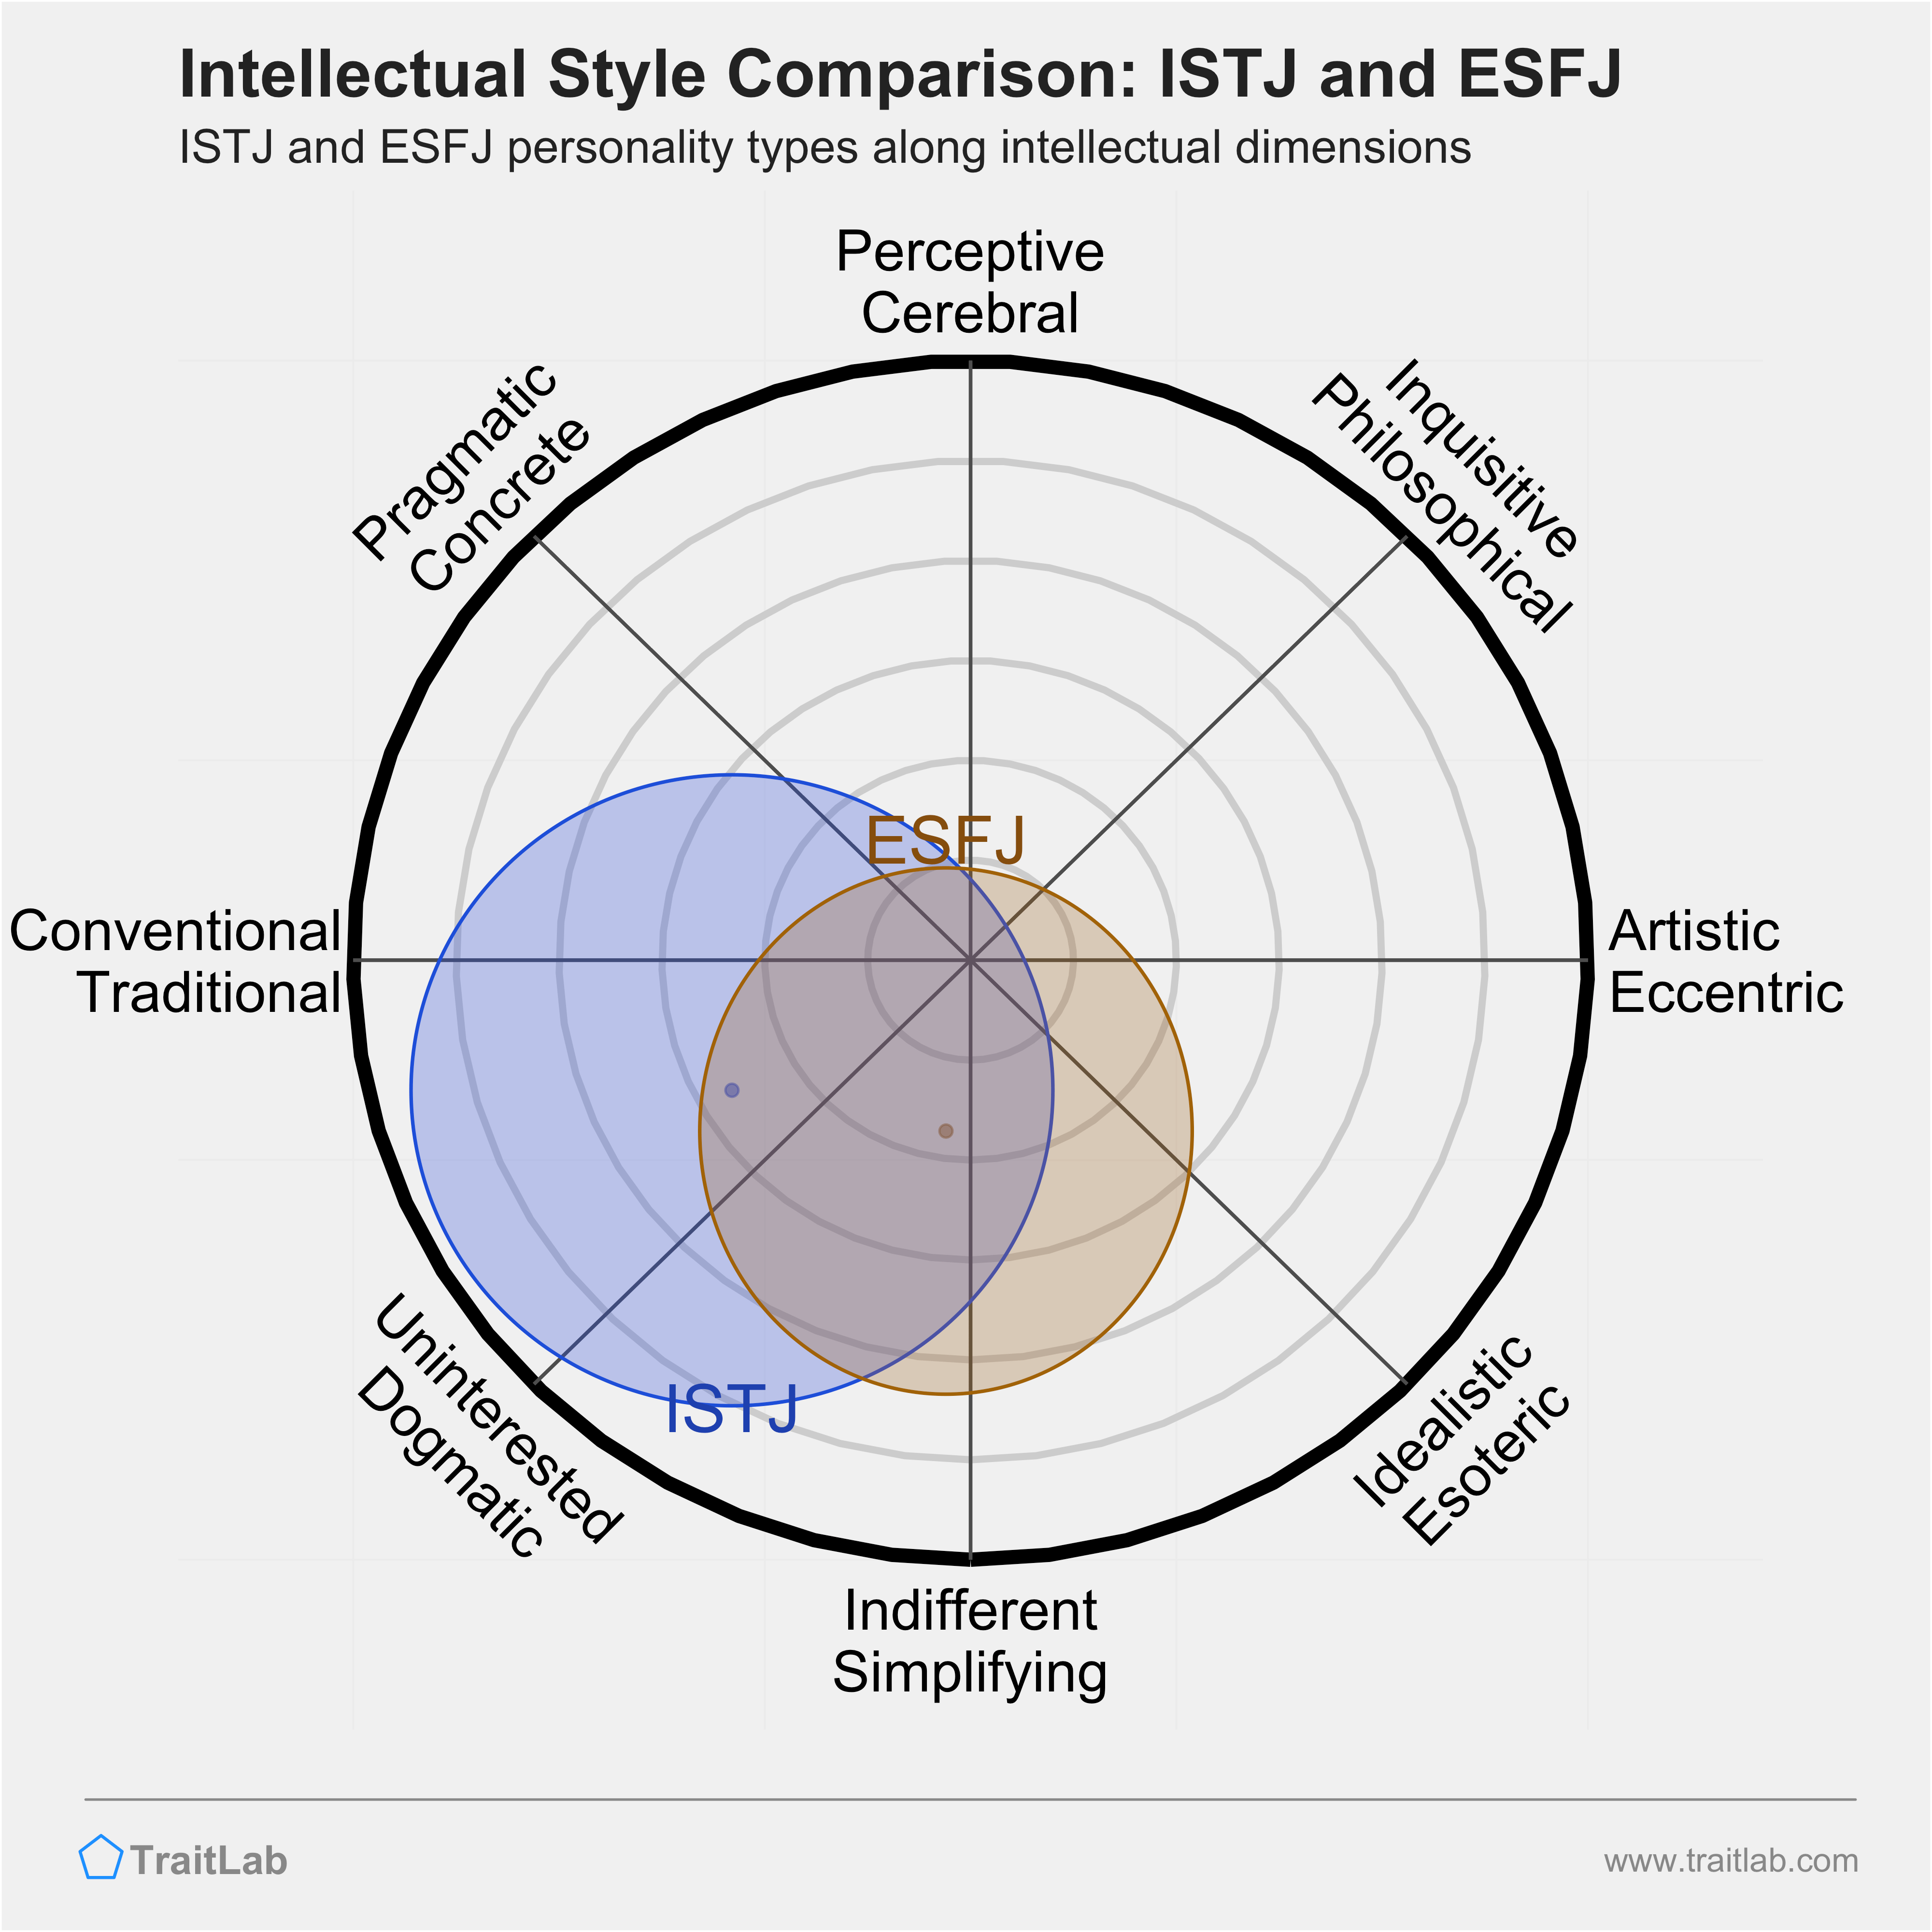 ISTJ and ESFJ comparison across intellectual dimensions